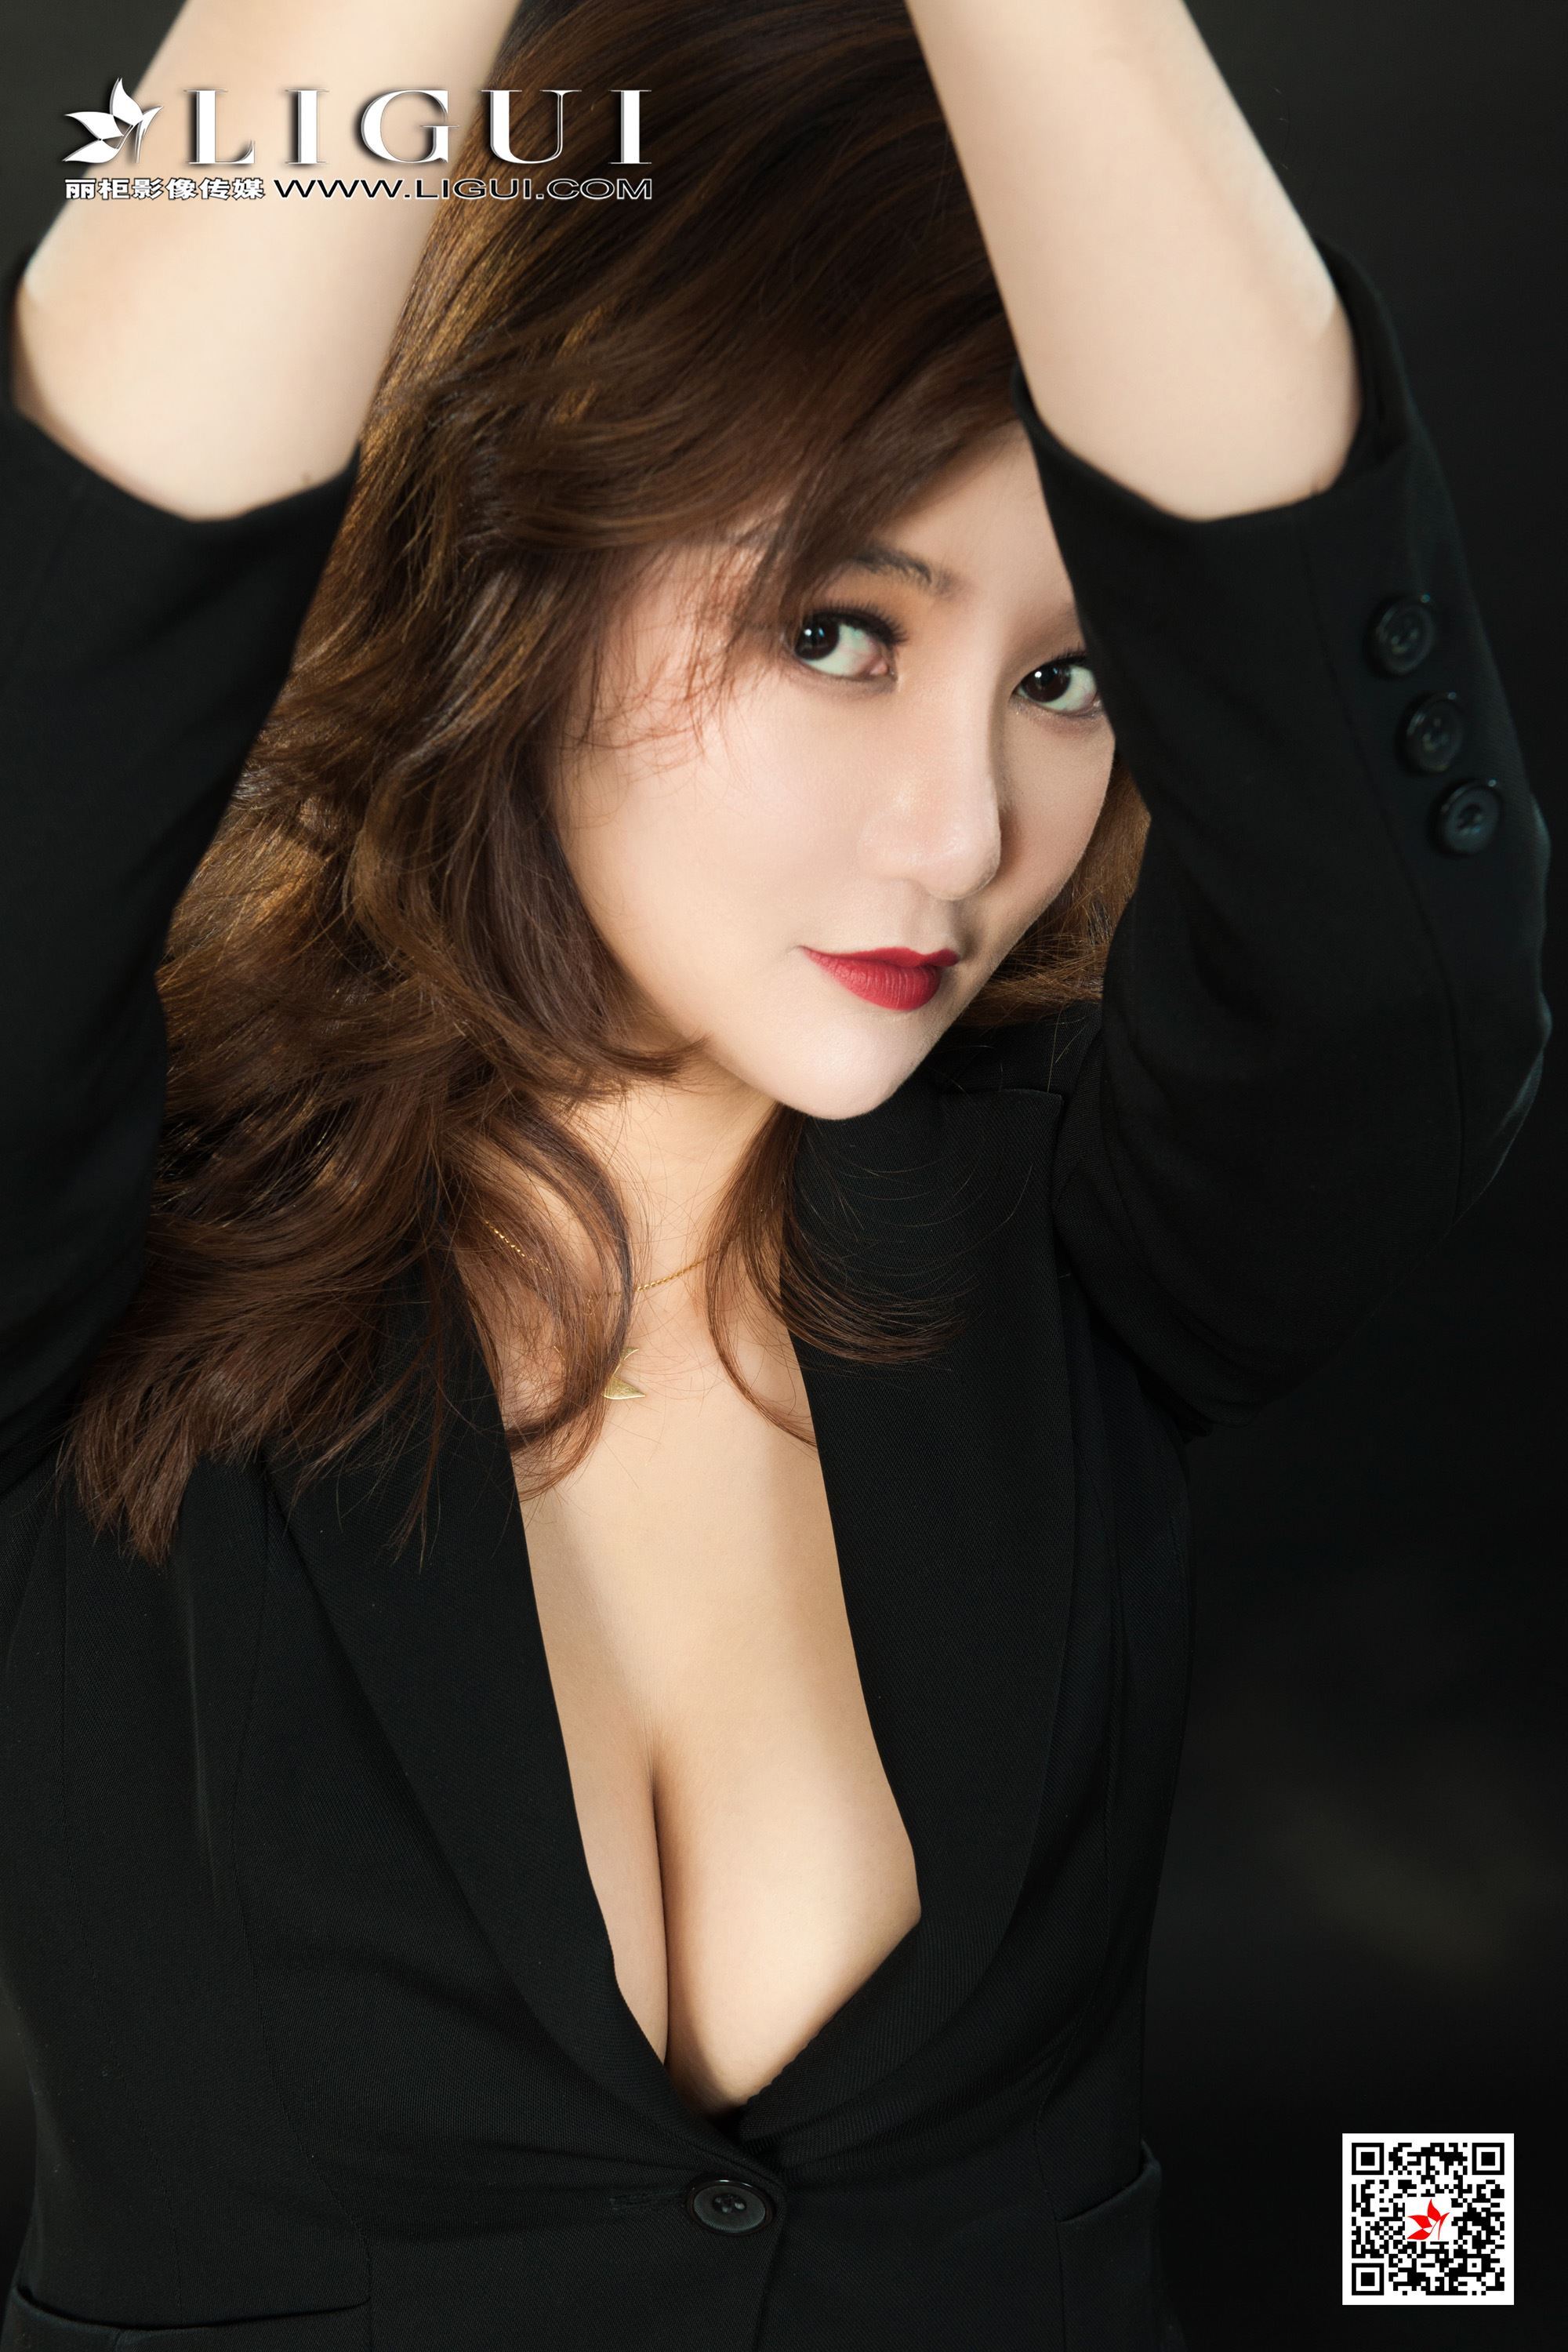 Li Gui Li cabinet 2021.04.16 network beauty model Wen Rui